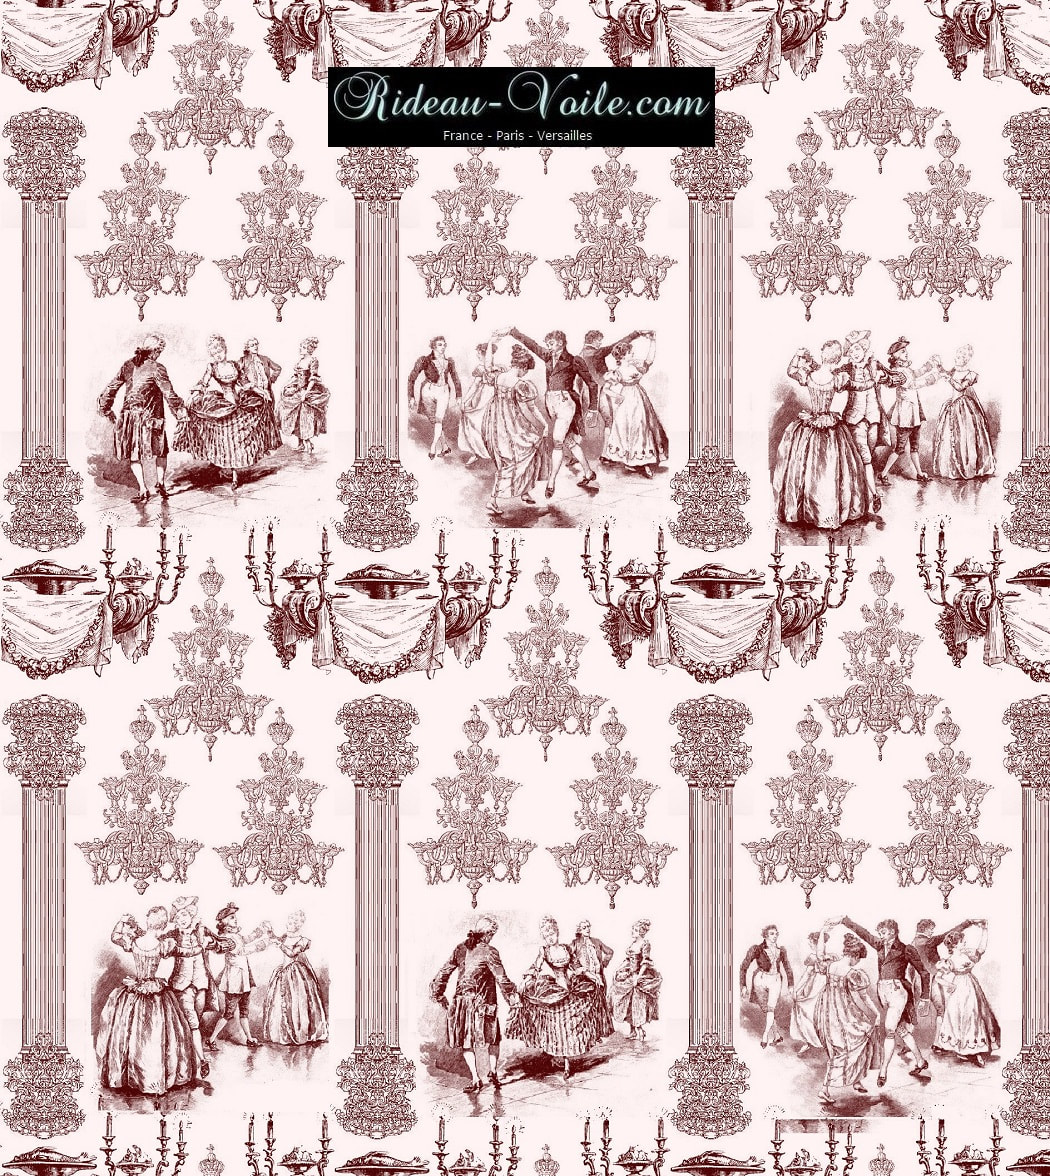 tissu imprimé Toile de Jouy ameublement tapisserie Paris Versailles linge de maison décoration tissu au mètre